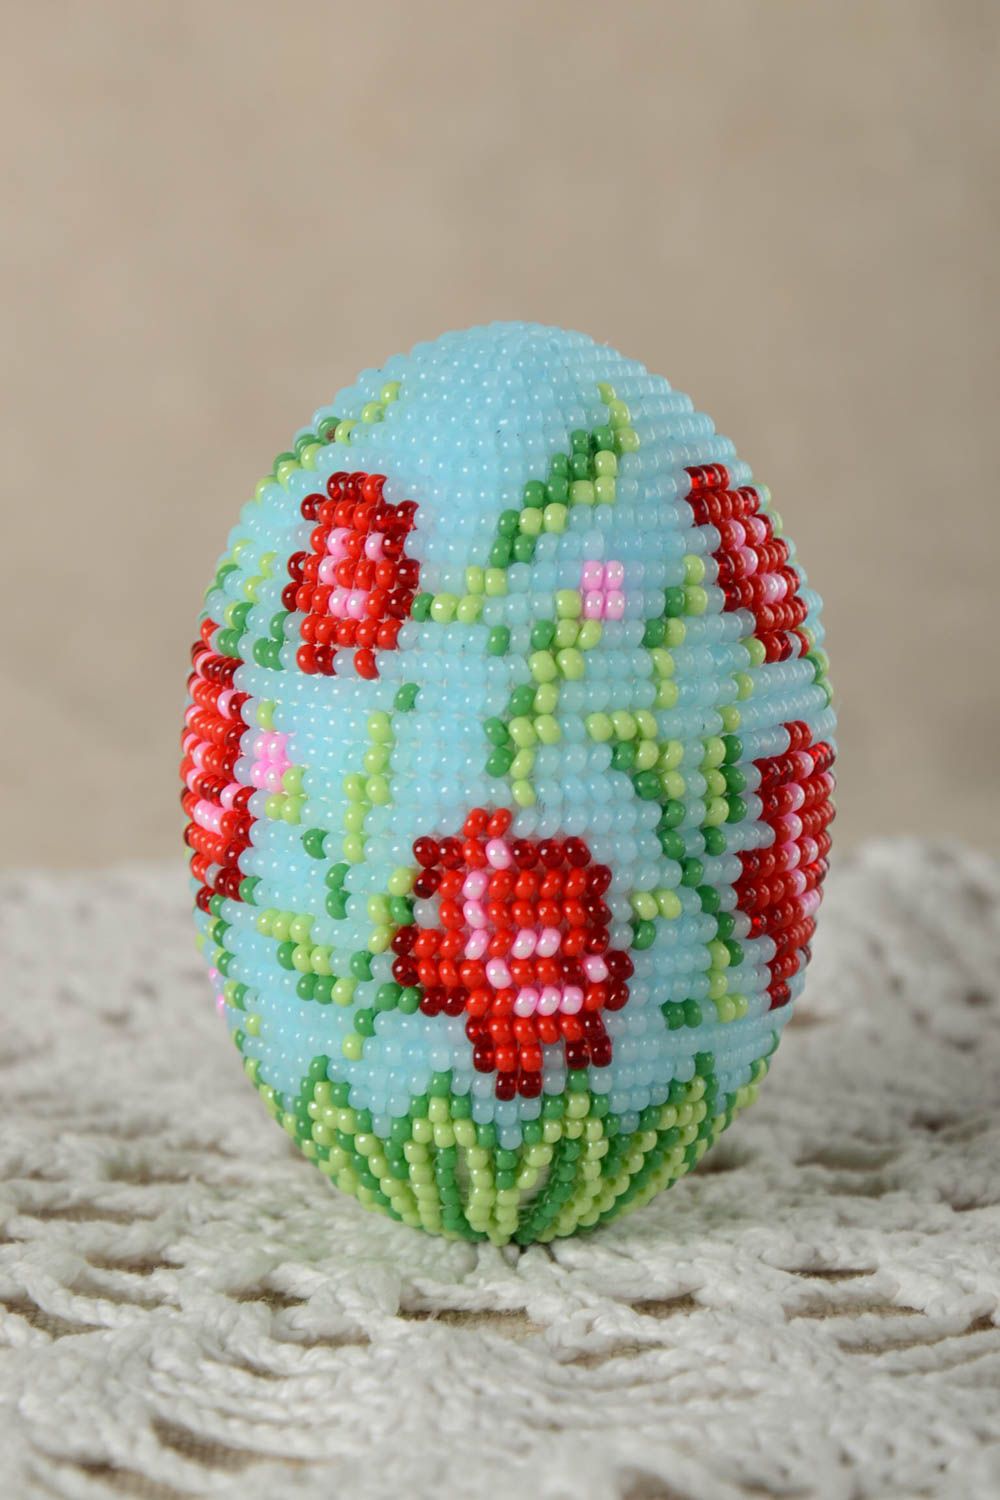 Пасхальное яйцо ручной работы пасхальный декор пасхальное украшение из бисера фото 1